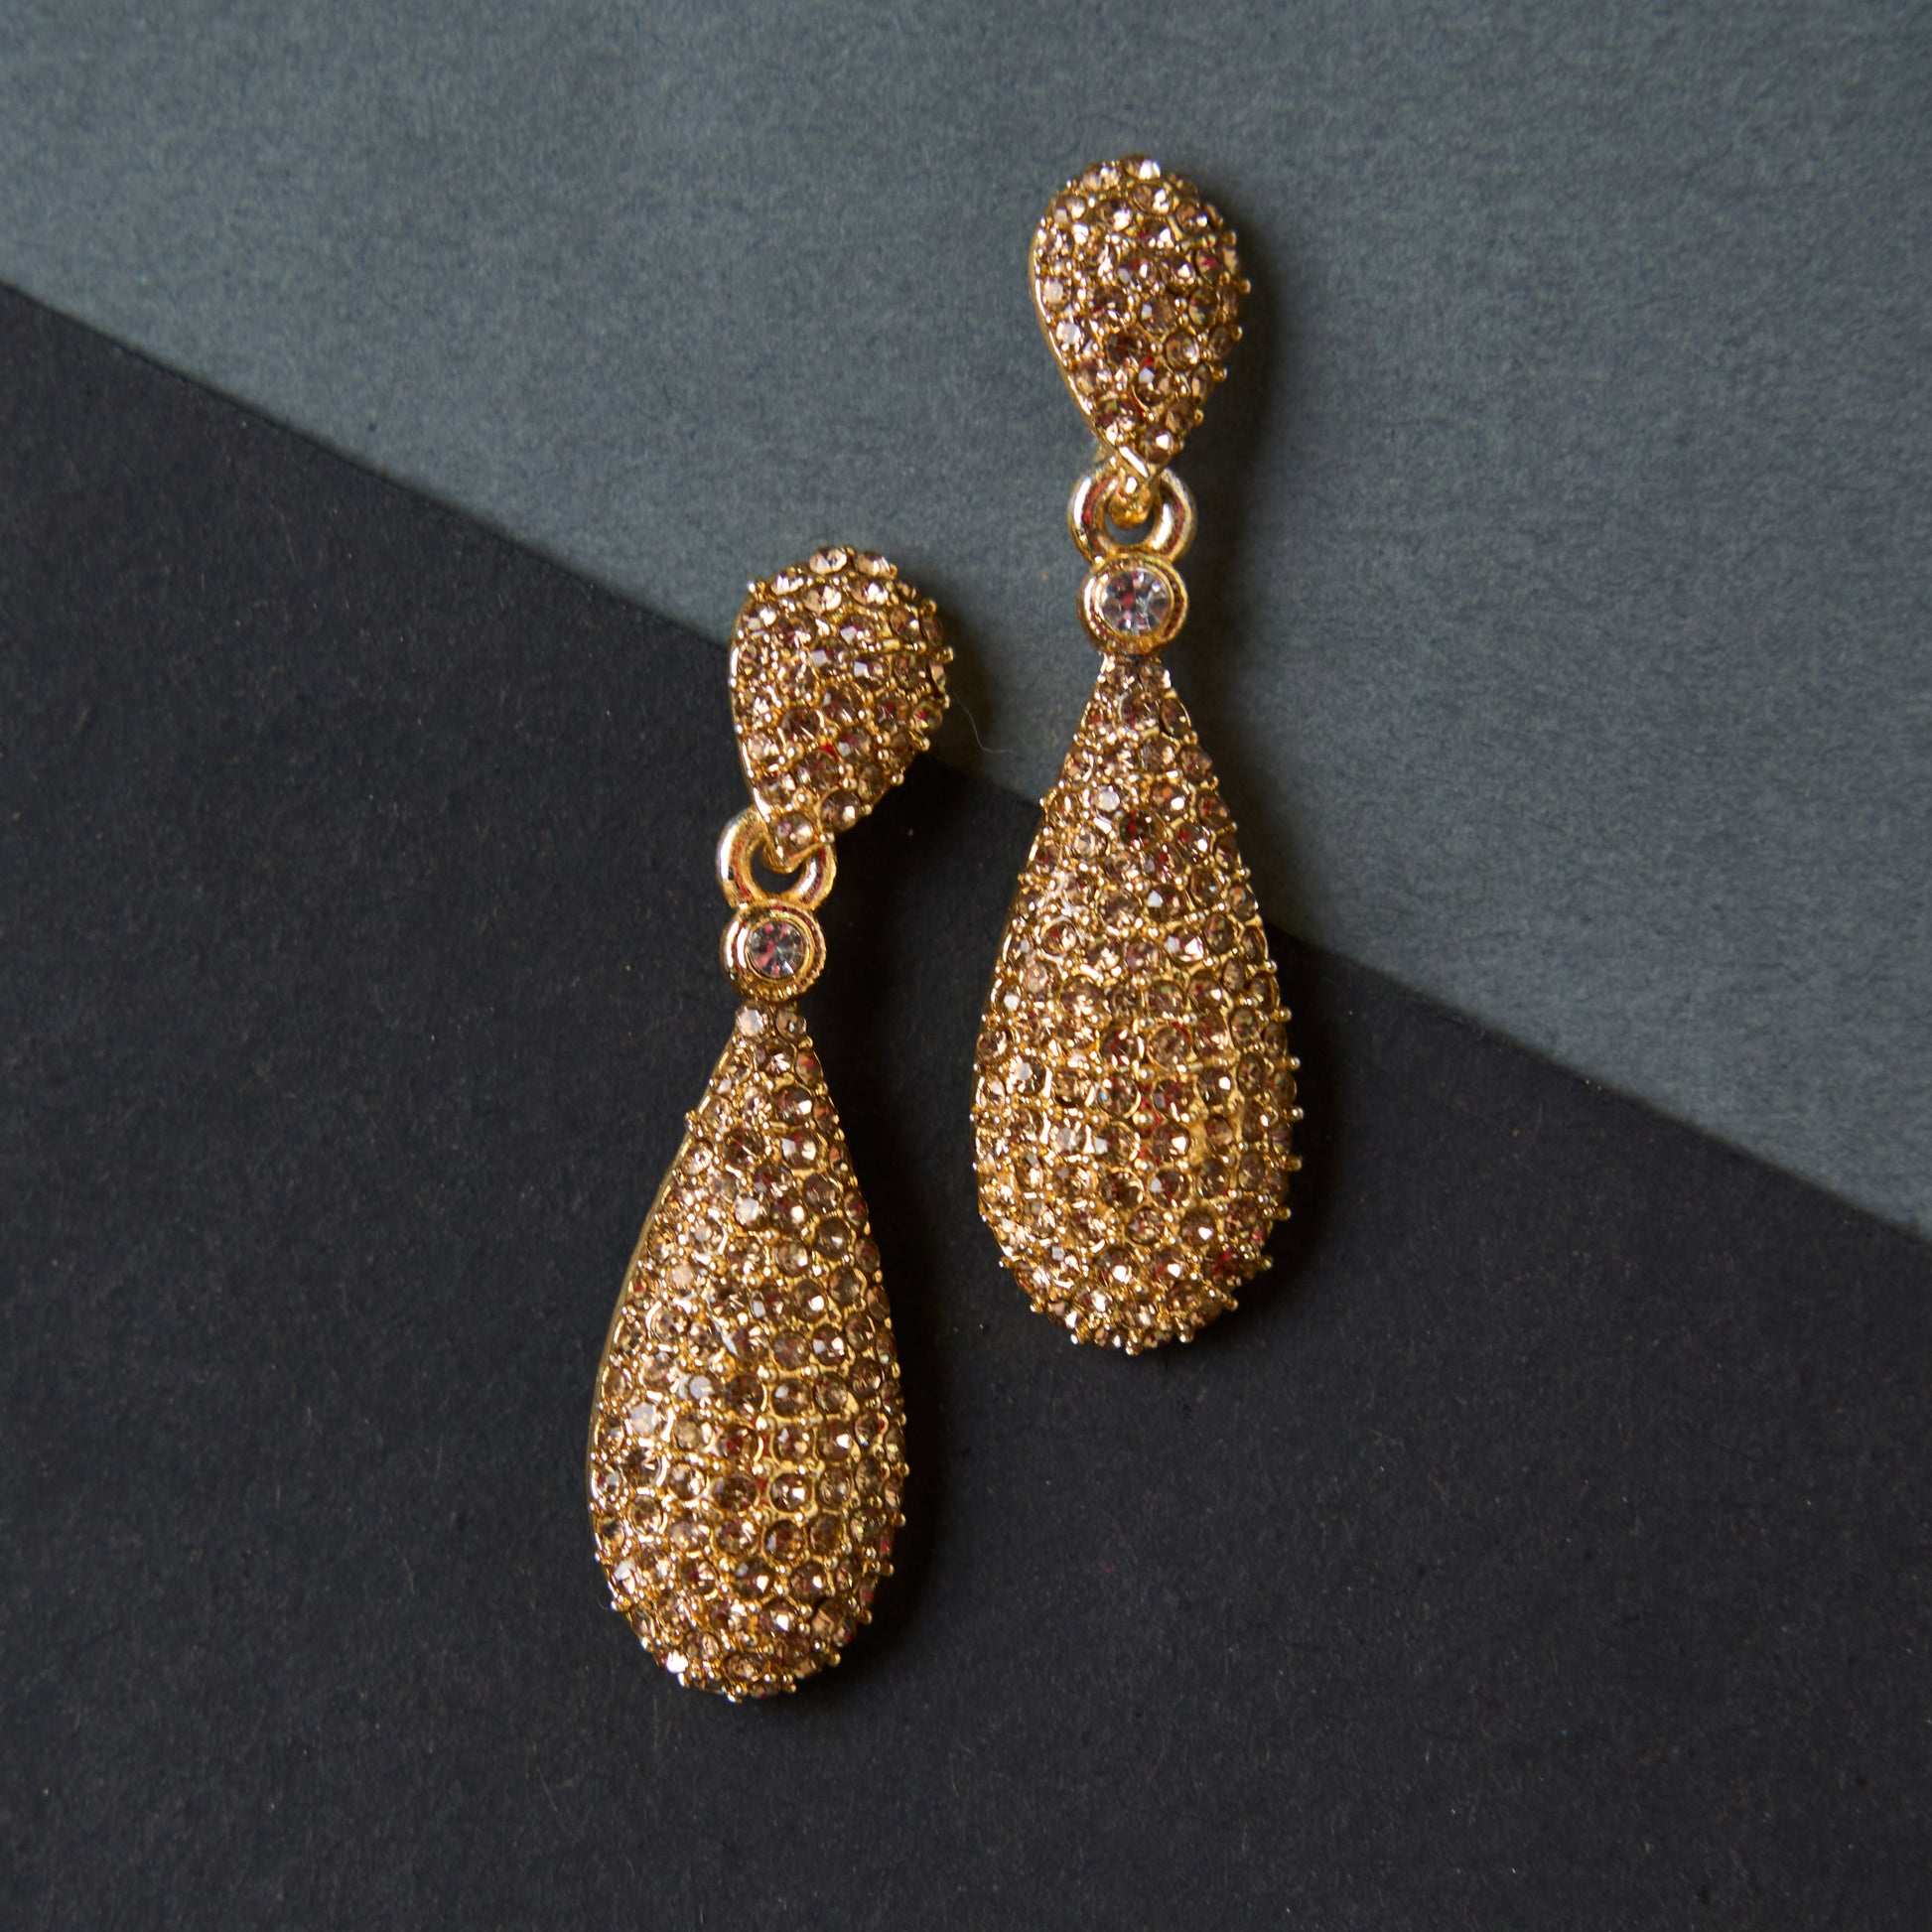 Moonstruck Champagne Diamond Golden Dangle Drop Earrings For Women Stylish - www.MoonstruckINC.com